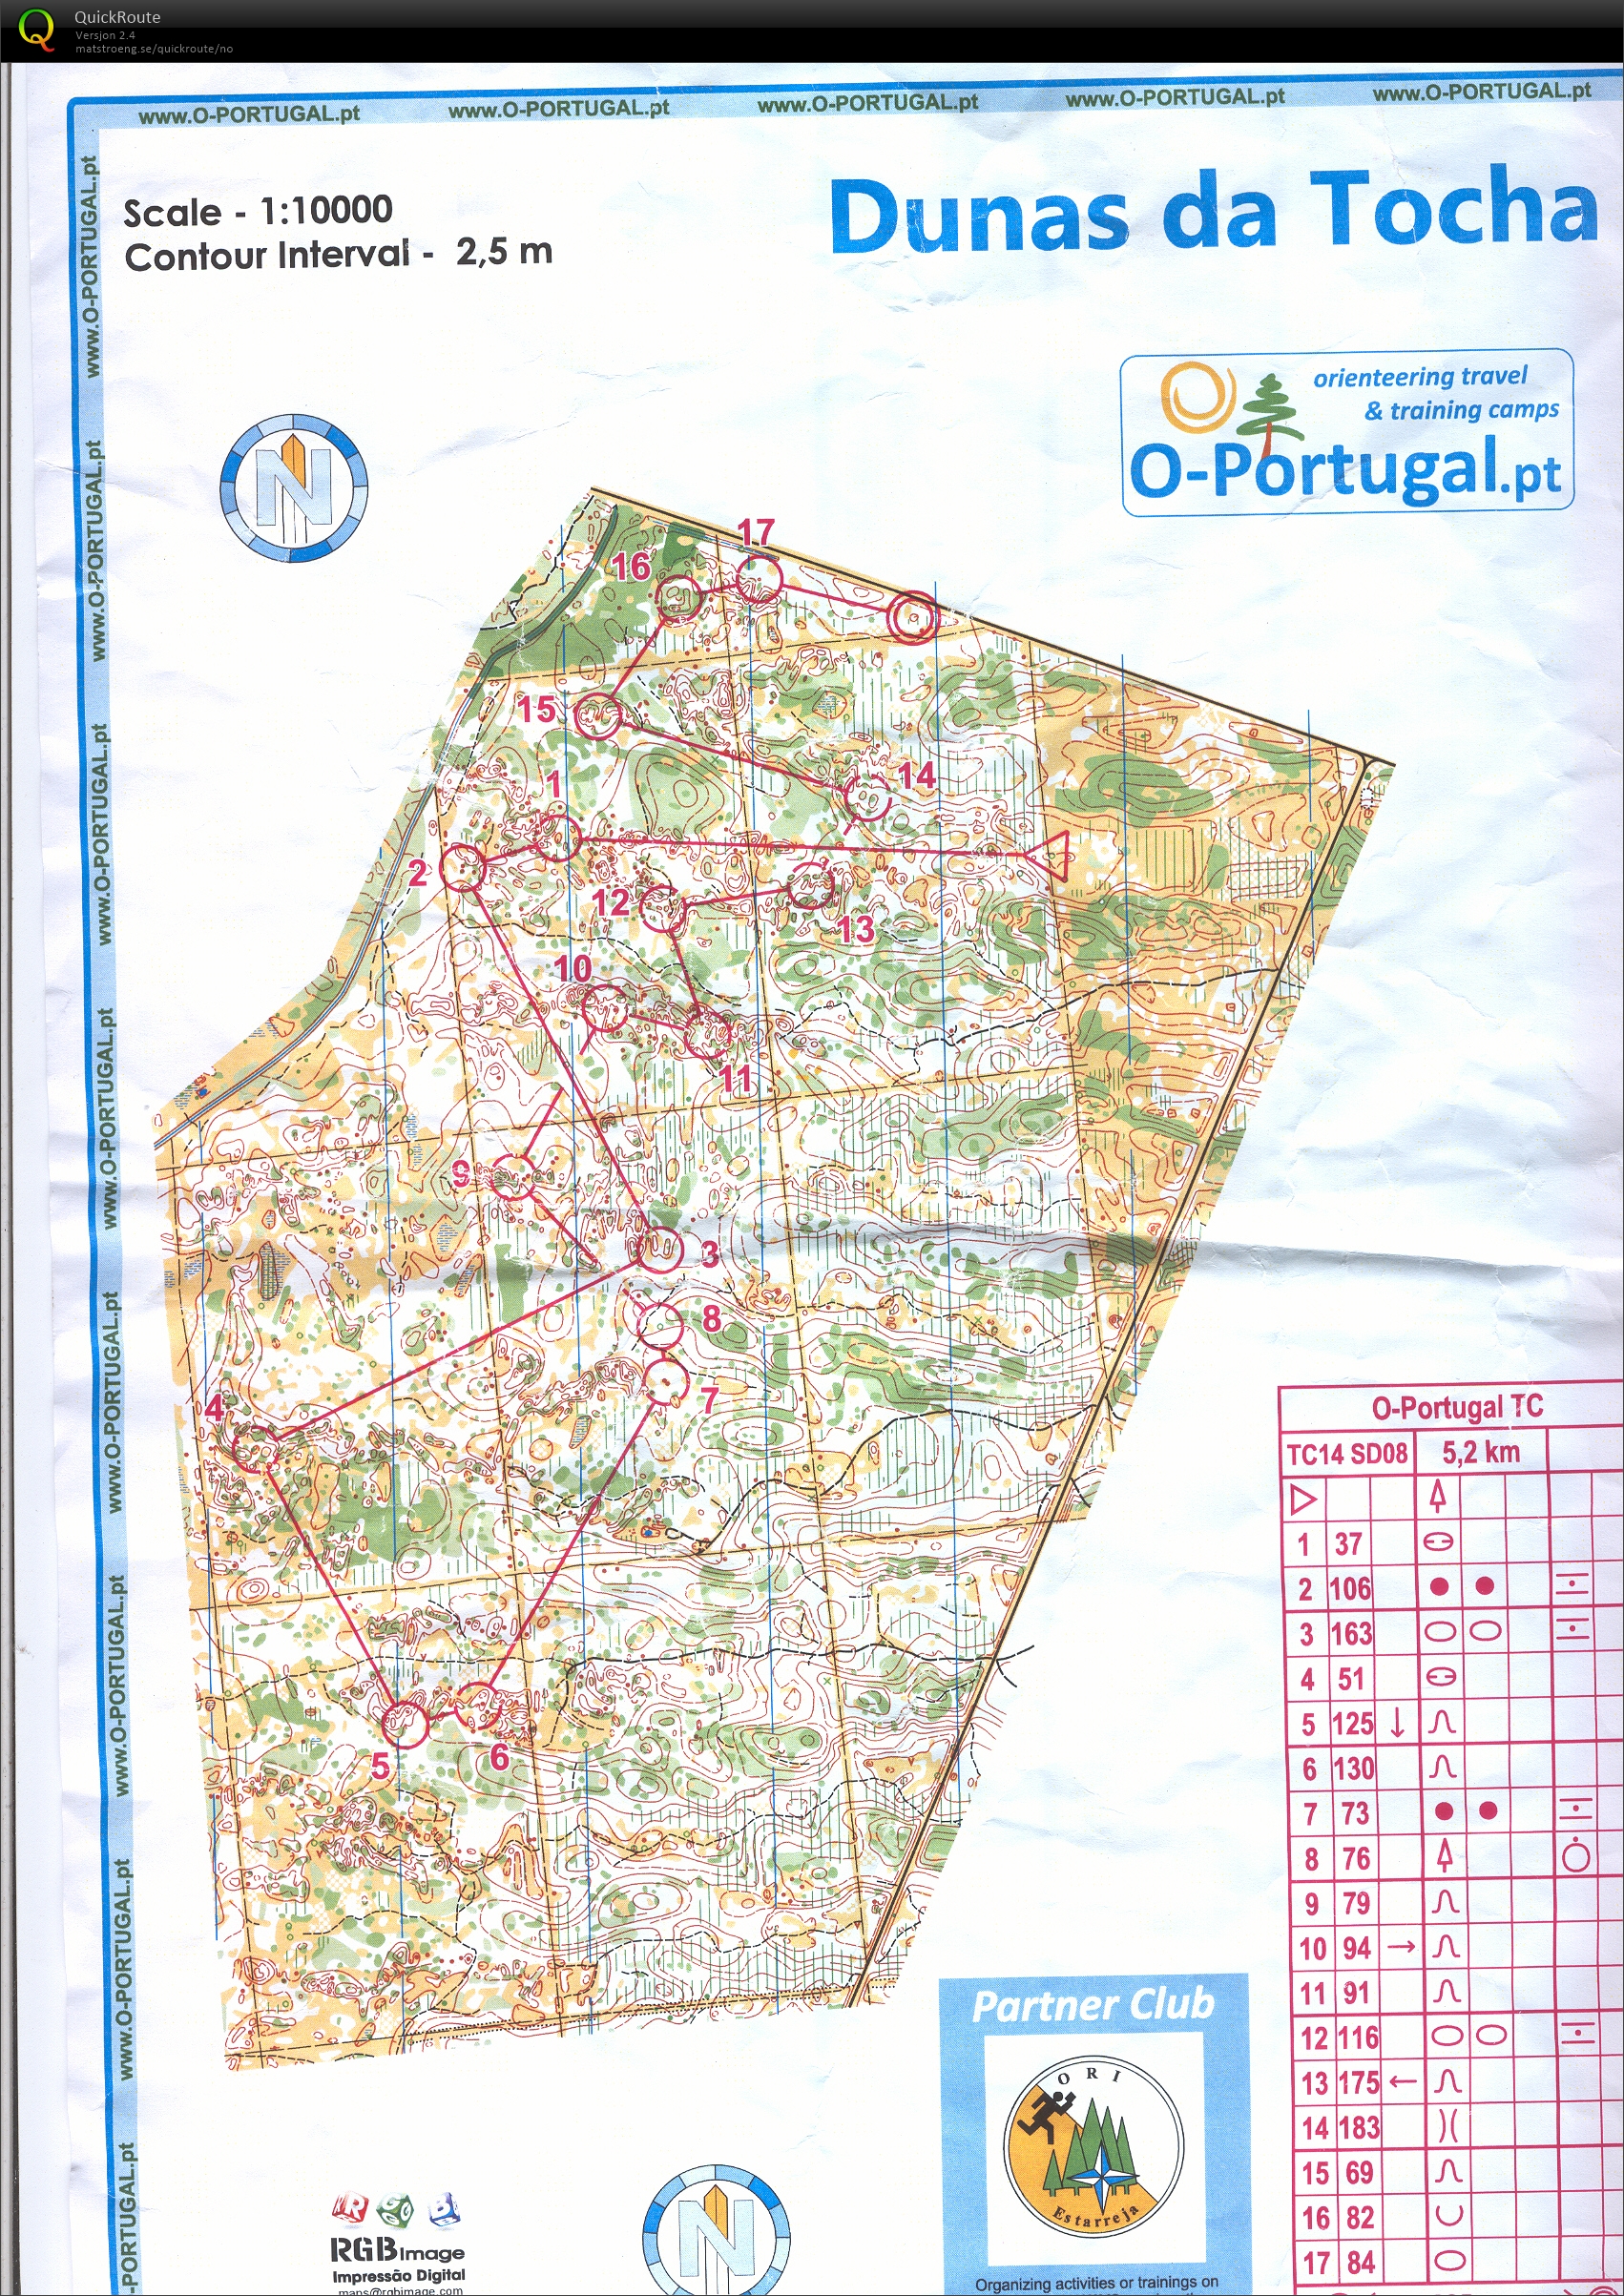 Portugal økt 6 (2014-01-22)